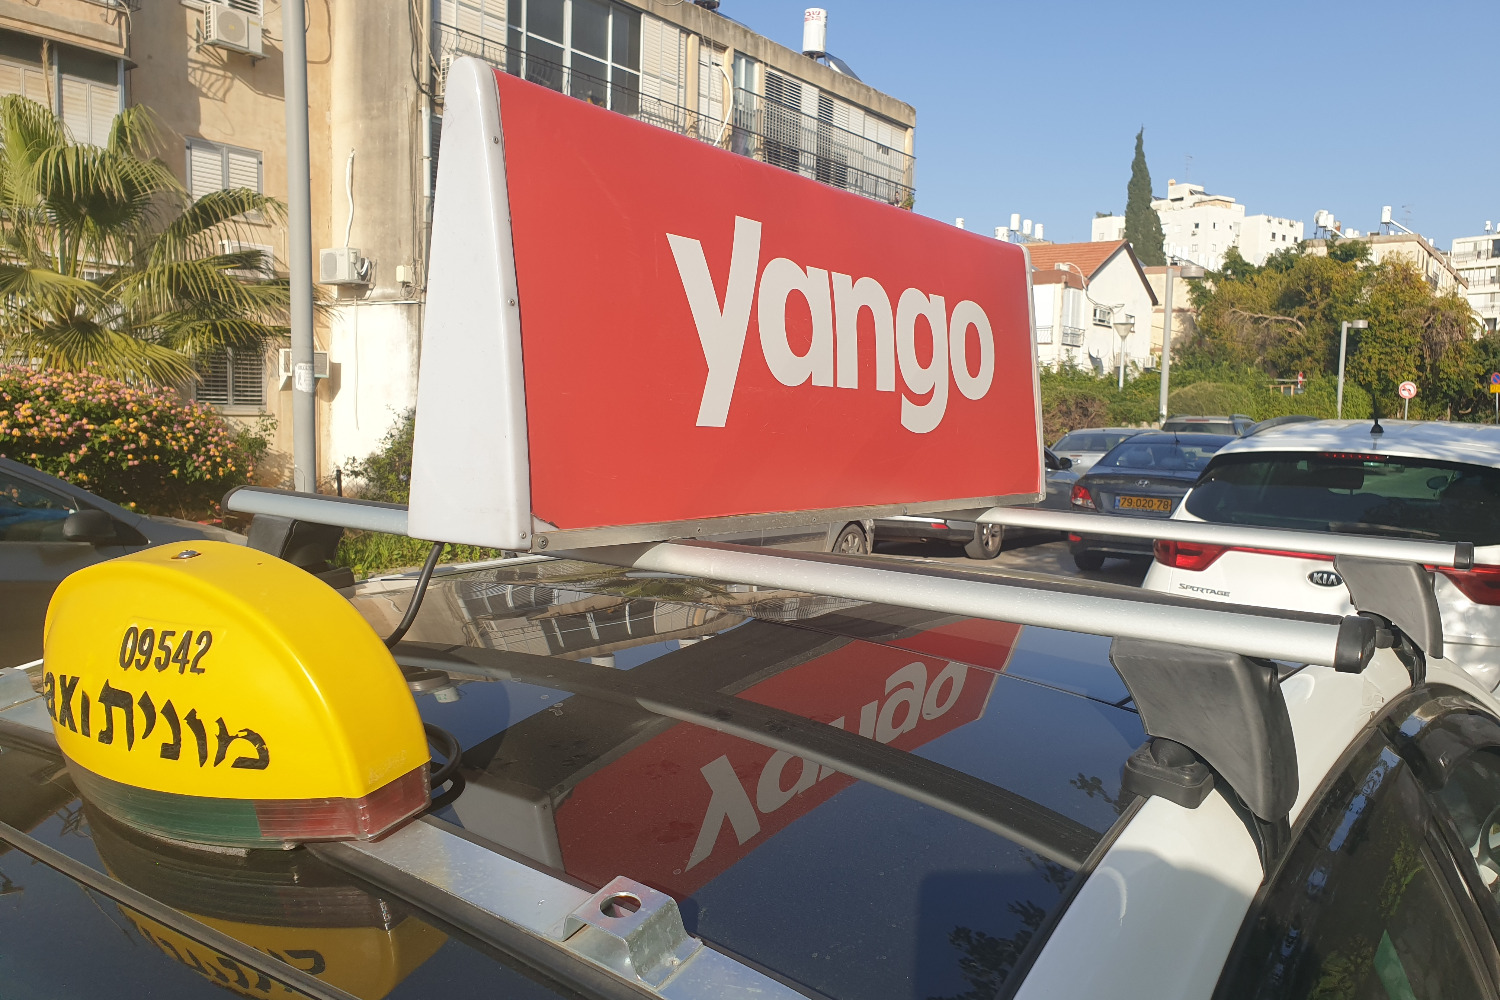 «Яндекс» продал сервис такси Yango израильтянам. Что это меняет?